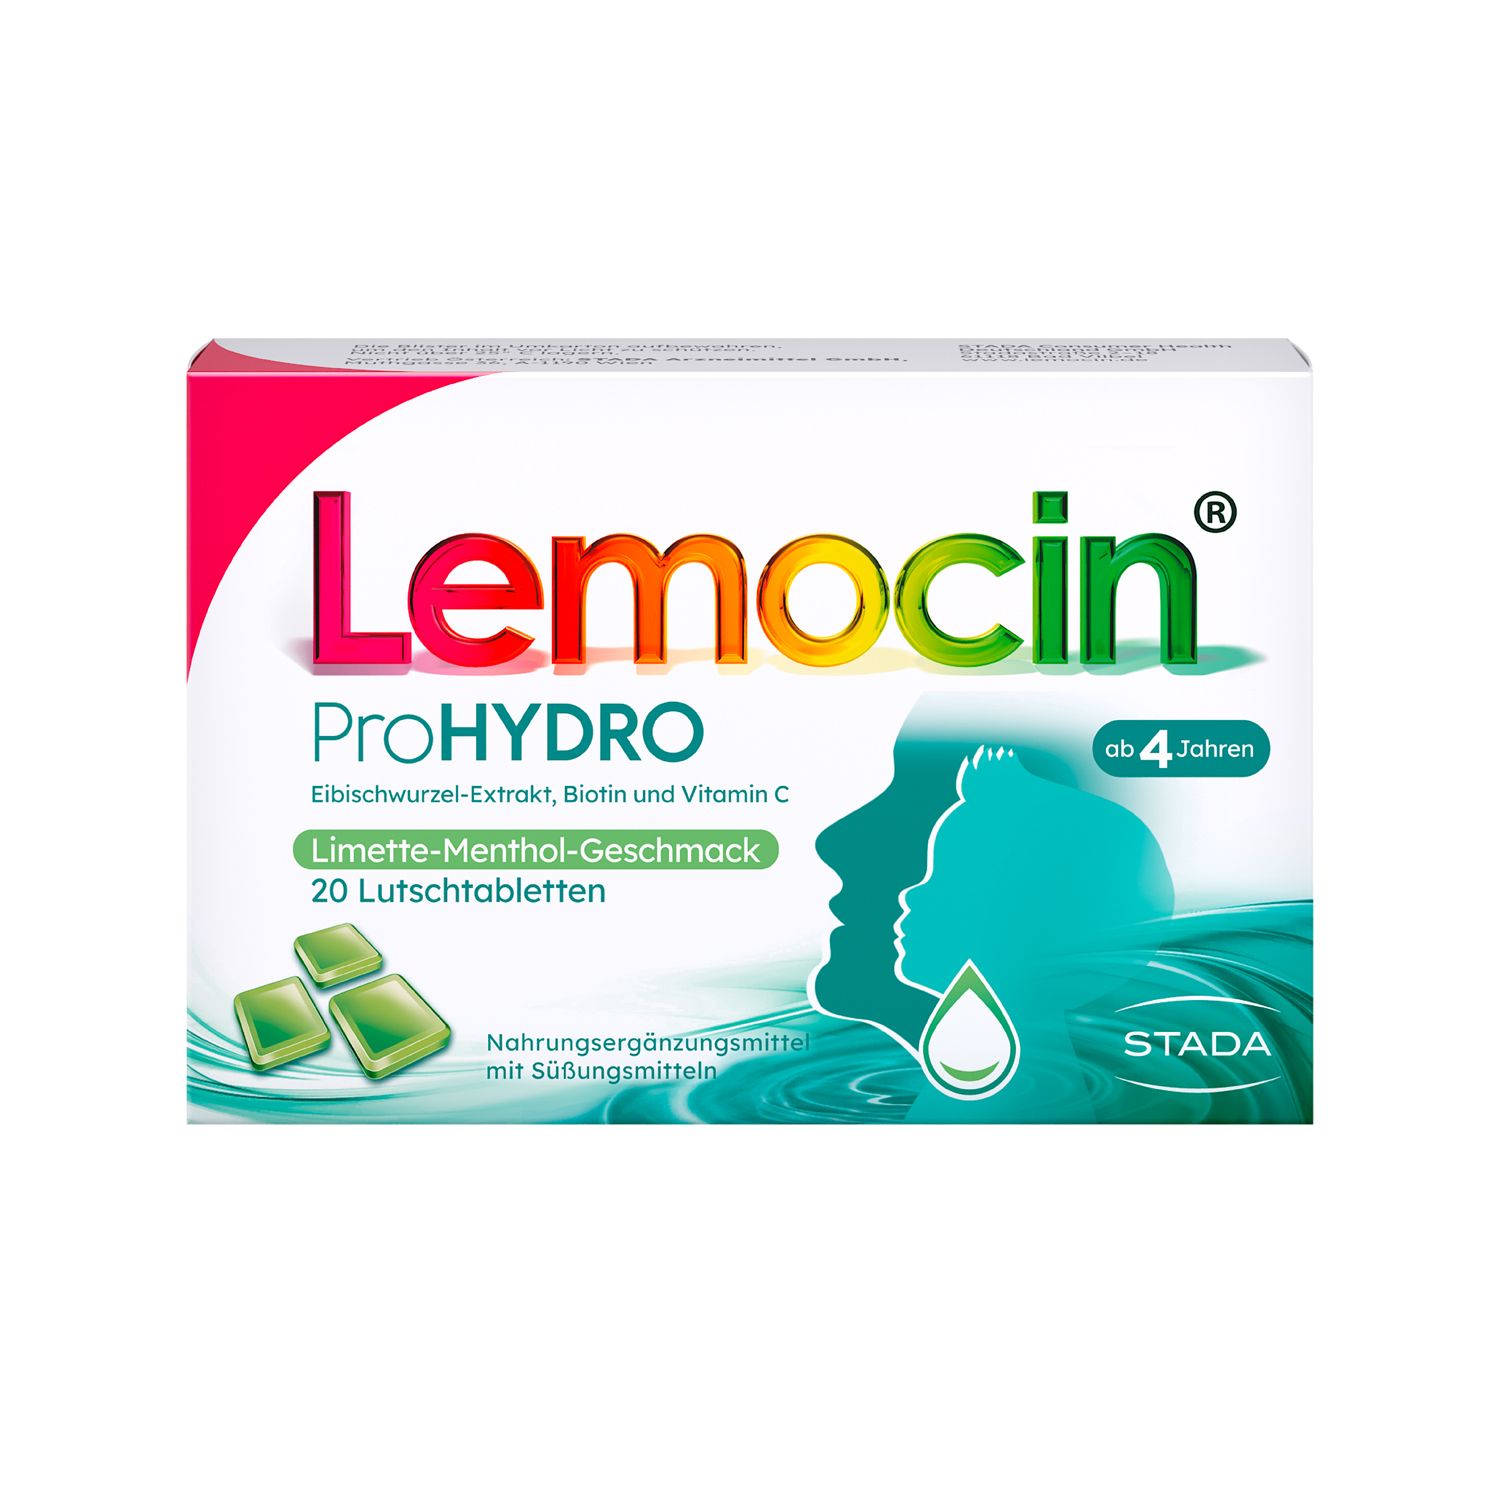 Lemocin® ProHYDRO für zwischendurch – Lutschtabletten mit Vitamin C, Biotin und Eibischwurzelextrakt zur Beruhigung und Befeuchtung von Hals und Rachen